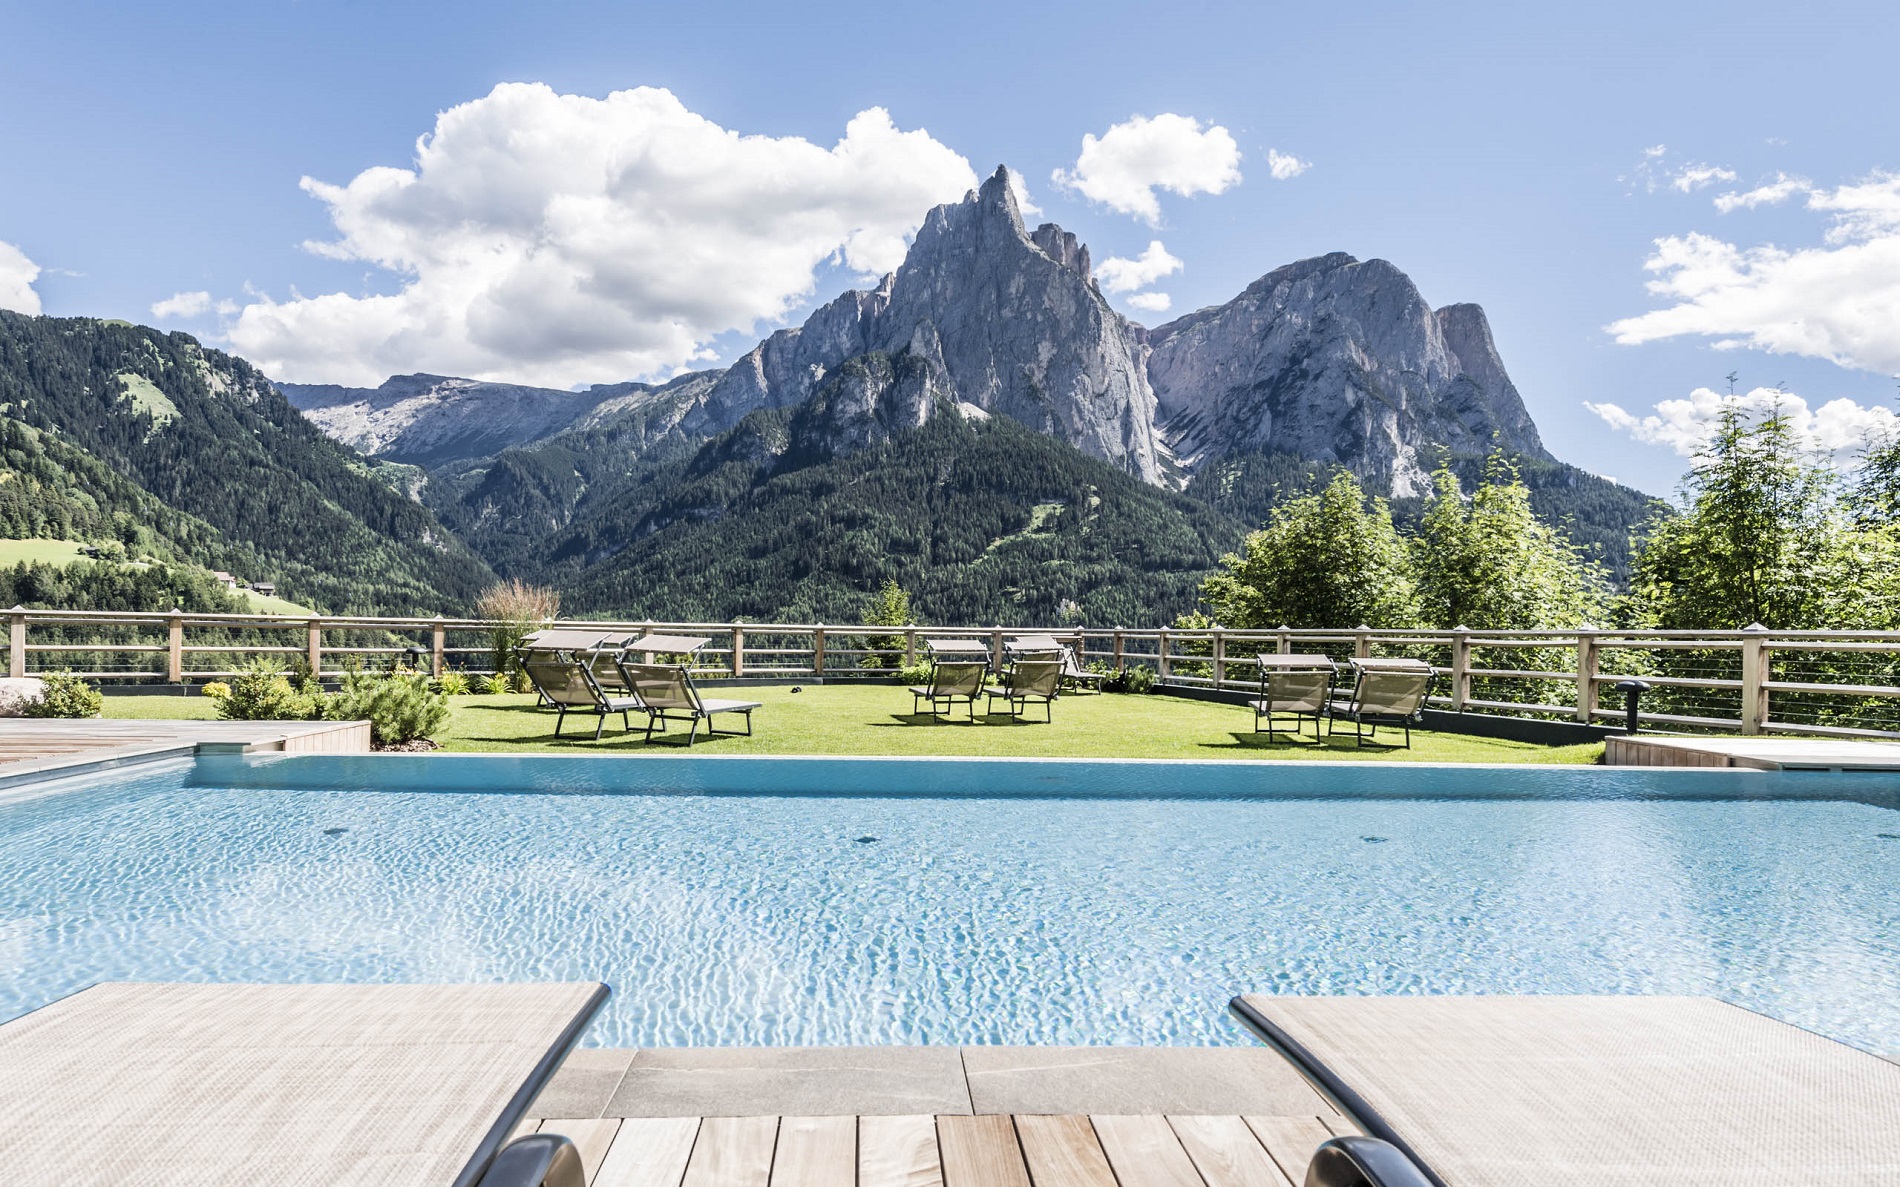  Residence Hotel Sonus Alpis 39040 Kastelruth - Seiser Alm - Dolomiten in Südtirol
